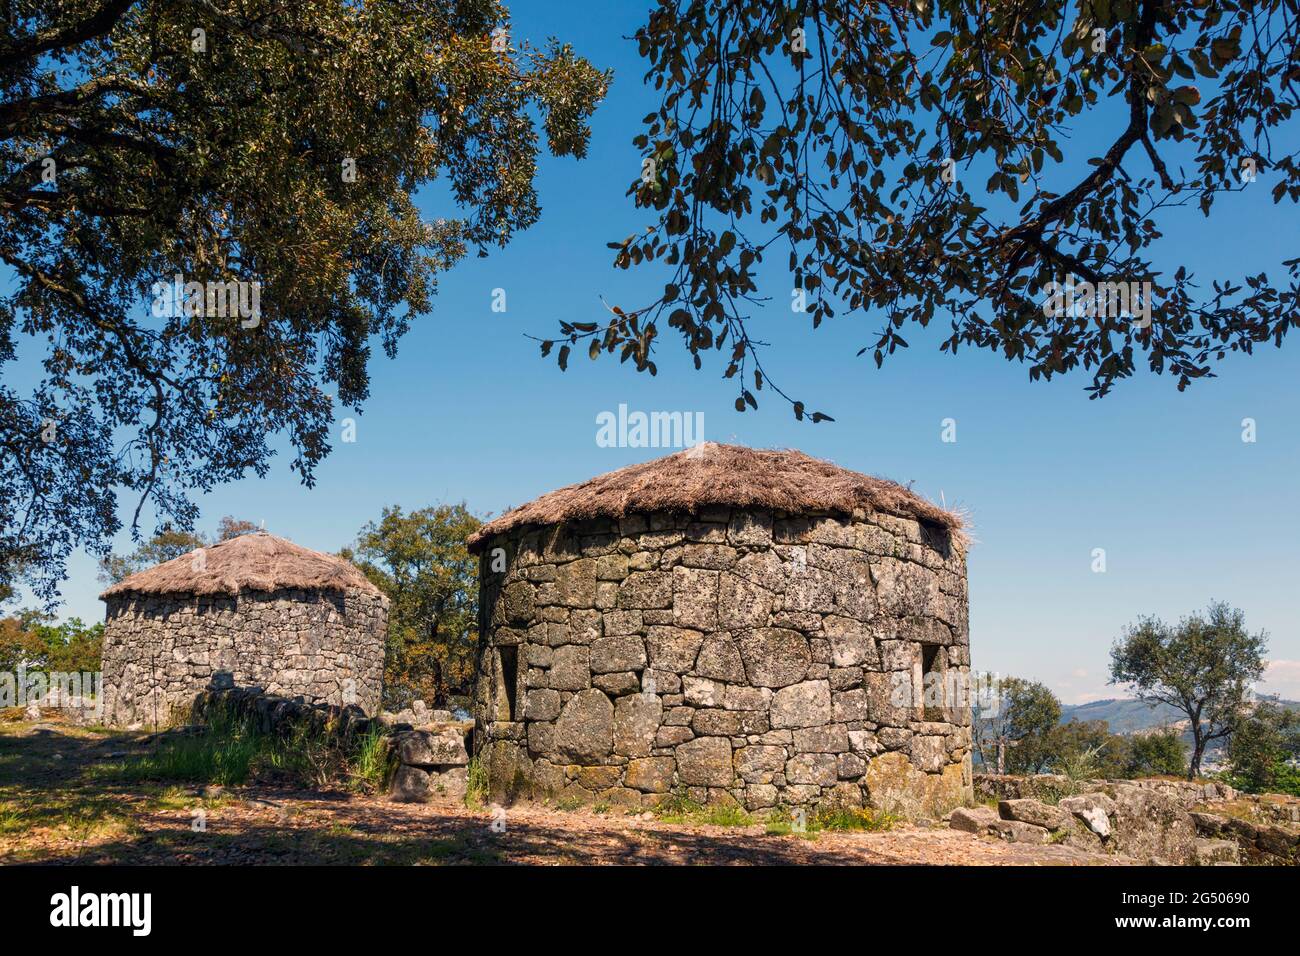 Citania de Briteiros, Bezirk Braga, Portugal. Eisenzeit Siedlung. Zwei rekonstruierte Steinhäuser. Eine der wichtigsten archäologischen Stätten Portugals Stockfoto